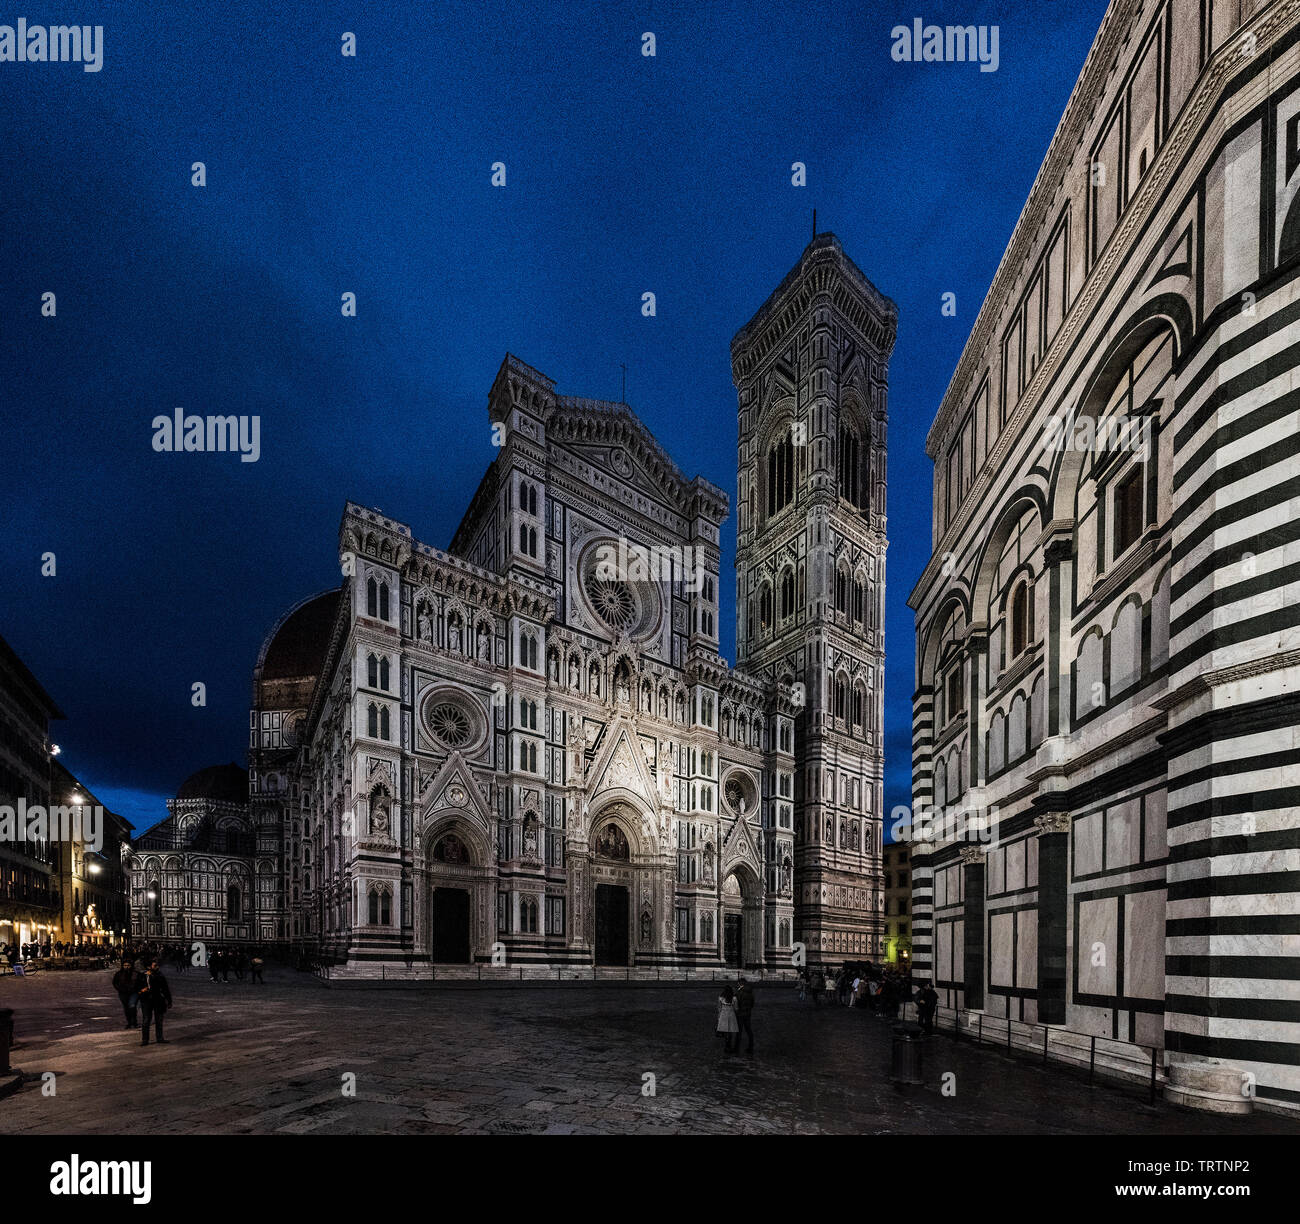 Duomo di Firenze Dom bei Nacht mit dem Taufbecken von St. John in Aussicht, Florenz, Italien, Europa, vor weißem Hintergrund Stockfoto